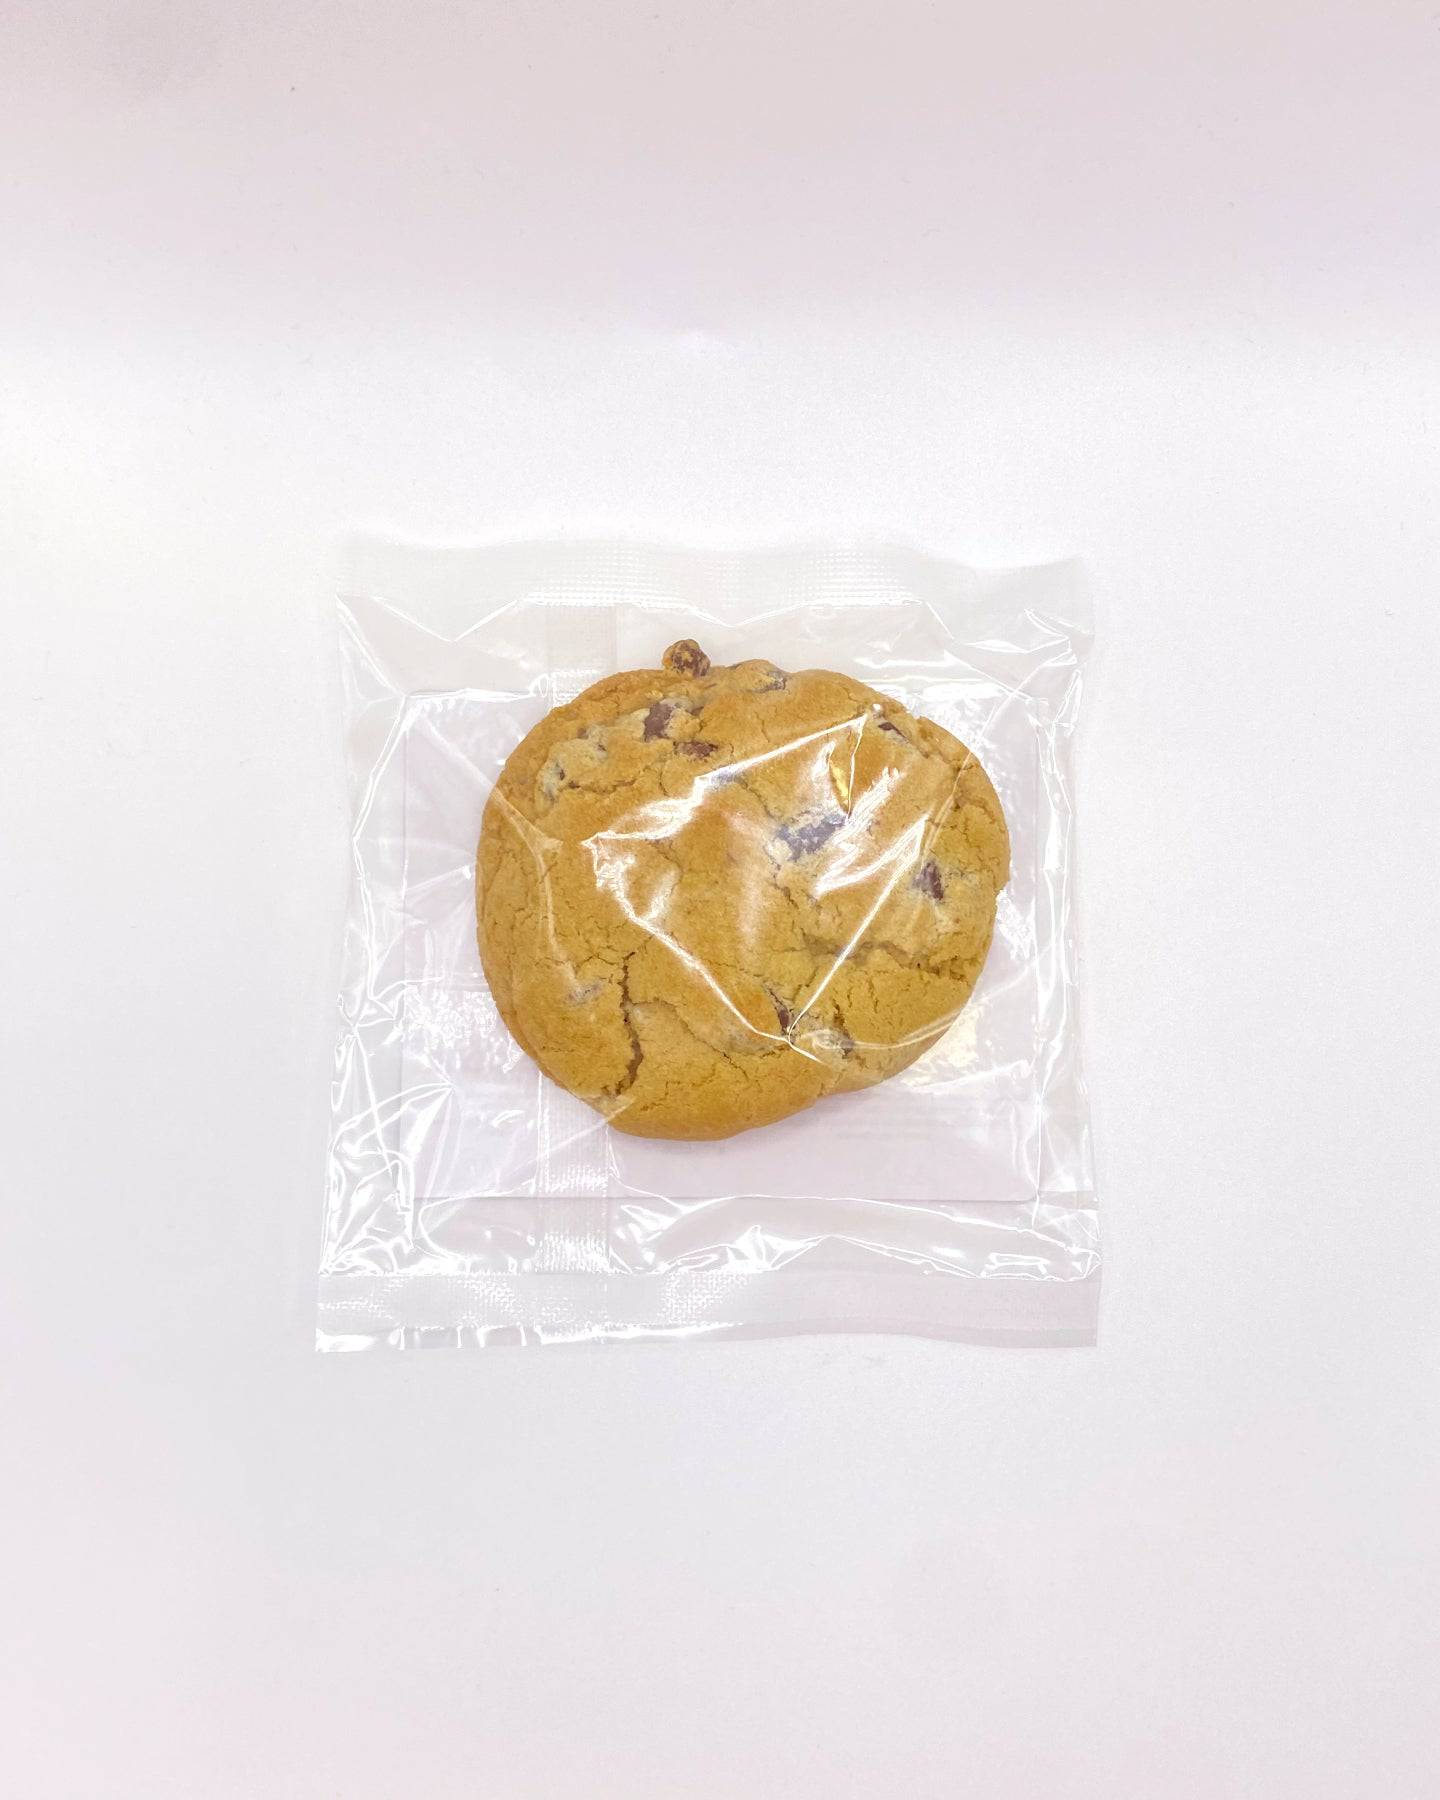 Δ8 THC Magic Cookie - Rosin Infused - Ouachita Farms